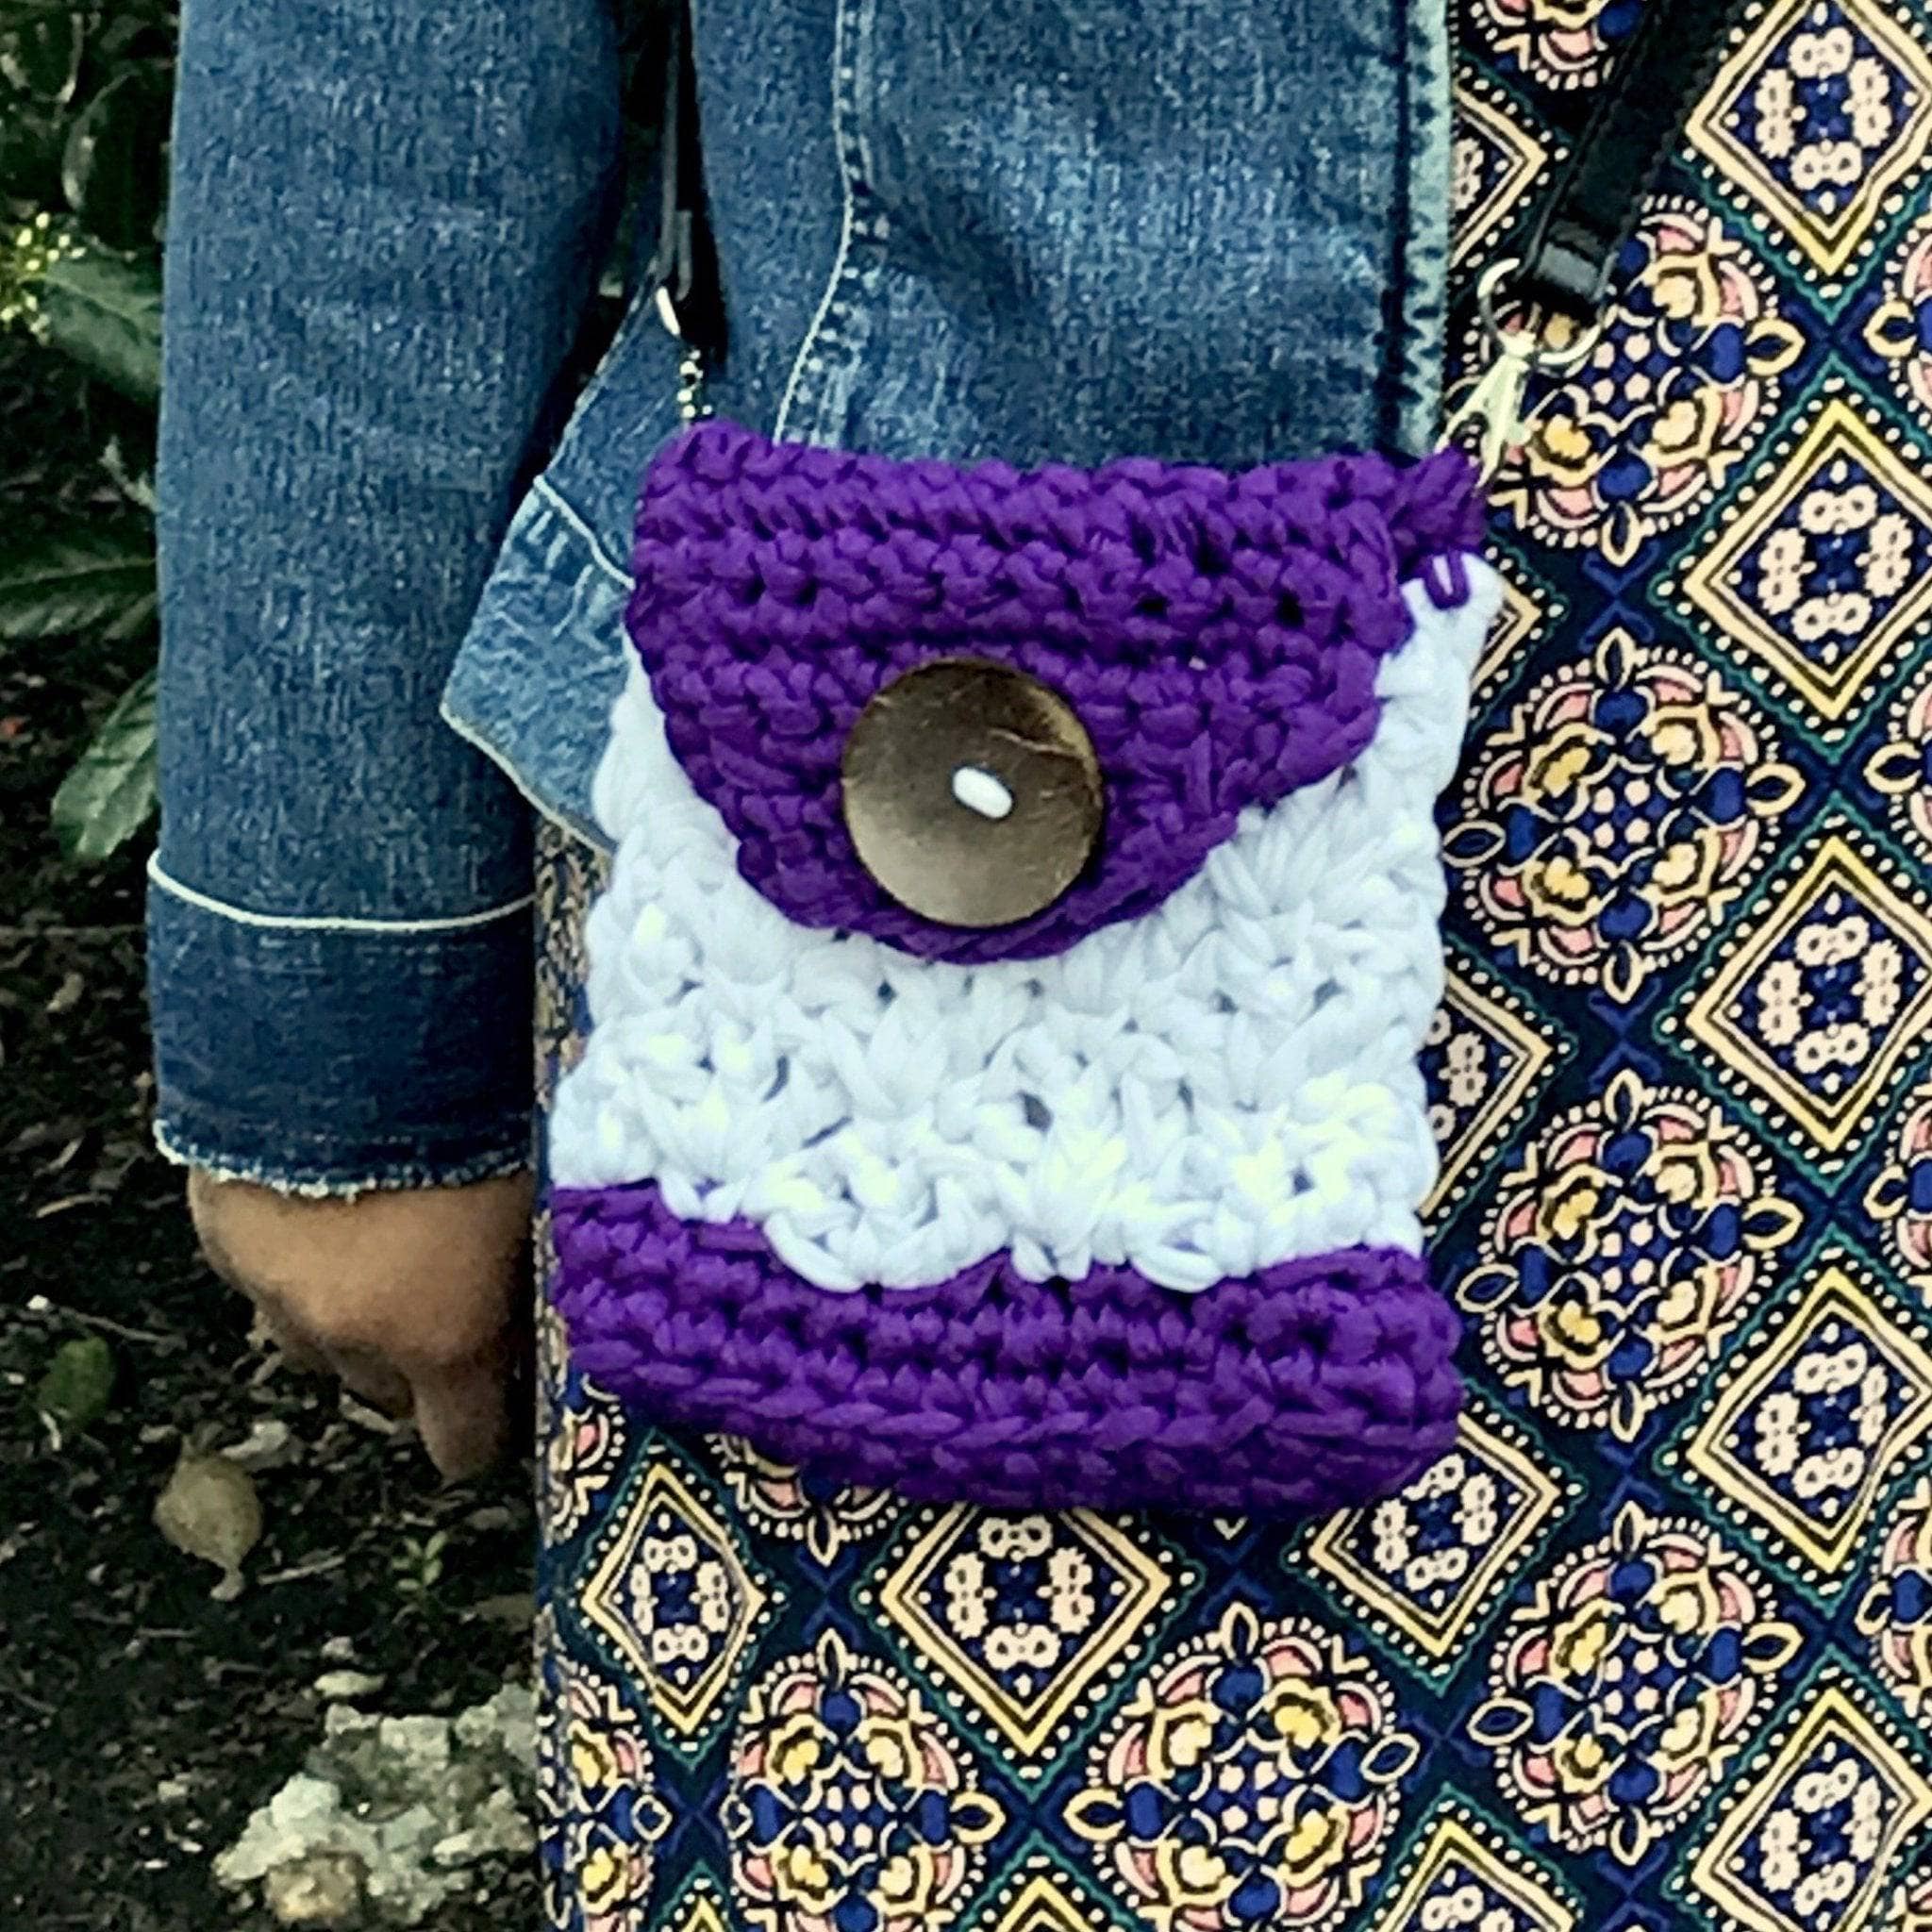 Free Crossbody Crochet Bag Pattern - Sierra's Crafty Creations | Crochet  bag pattern free, Crochet handbags patterns, Crochet bag pattern